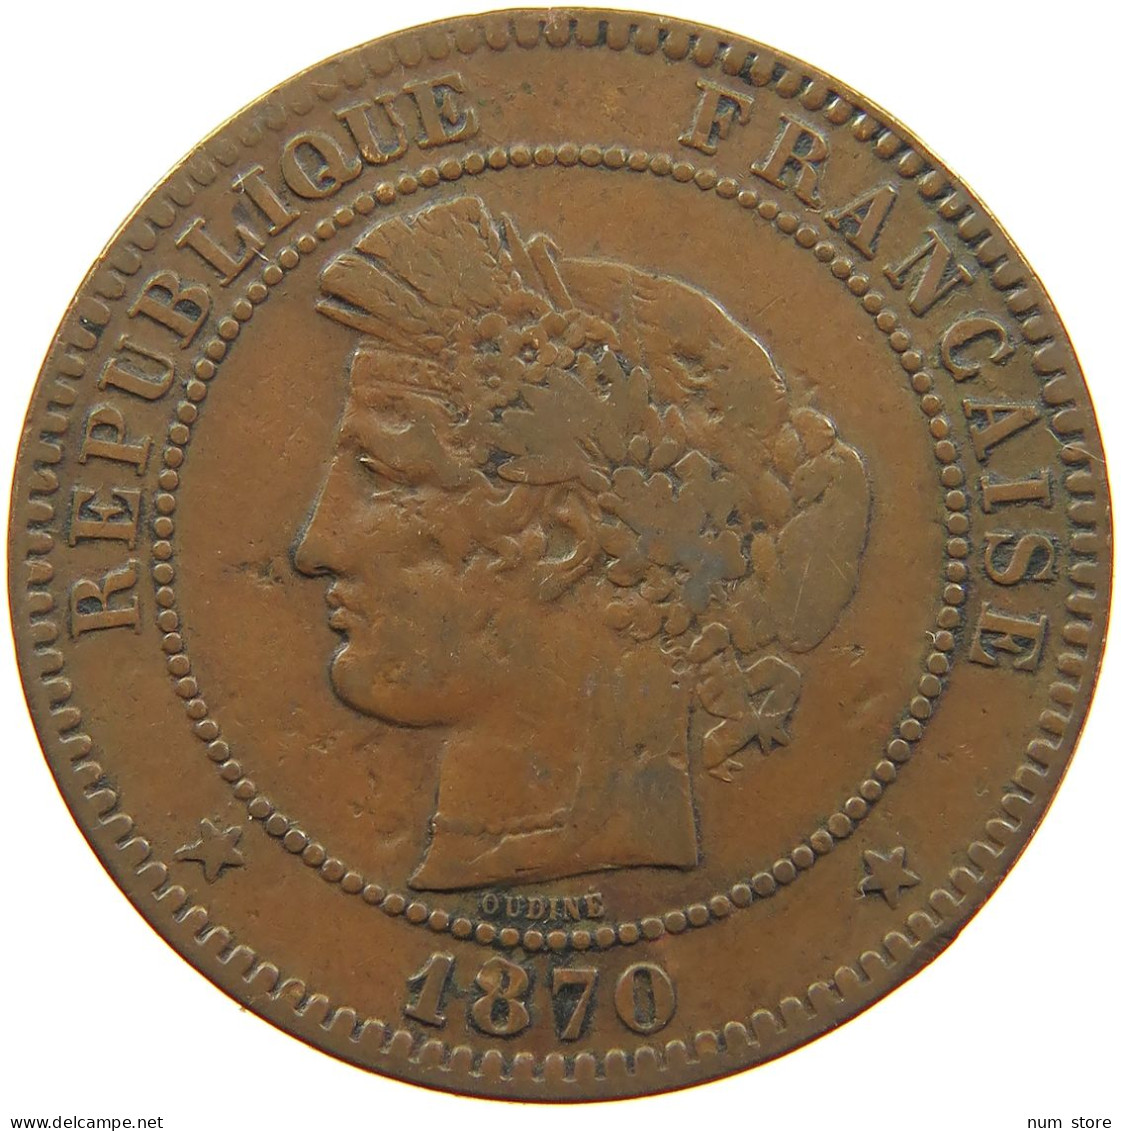 FRANCE 10 CENTIMES 1870 ENGRAVED NAPOLEON III. FLEUR DE PET FLE #t016 0083 - 10 Centimes